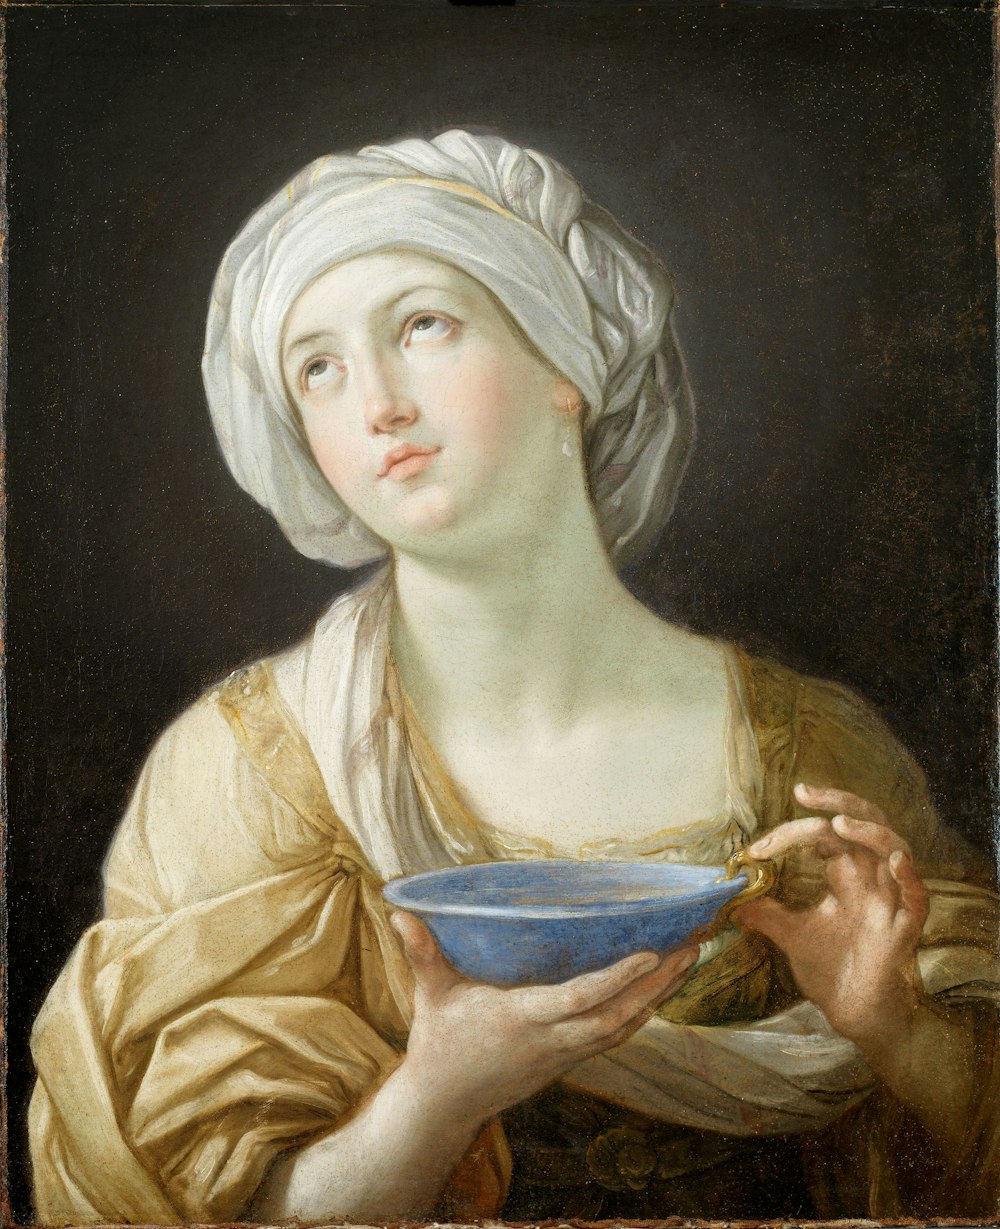 Frau mit weißem Kopfschmuck, während sie blaues Schüsselgemälde hält